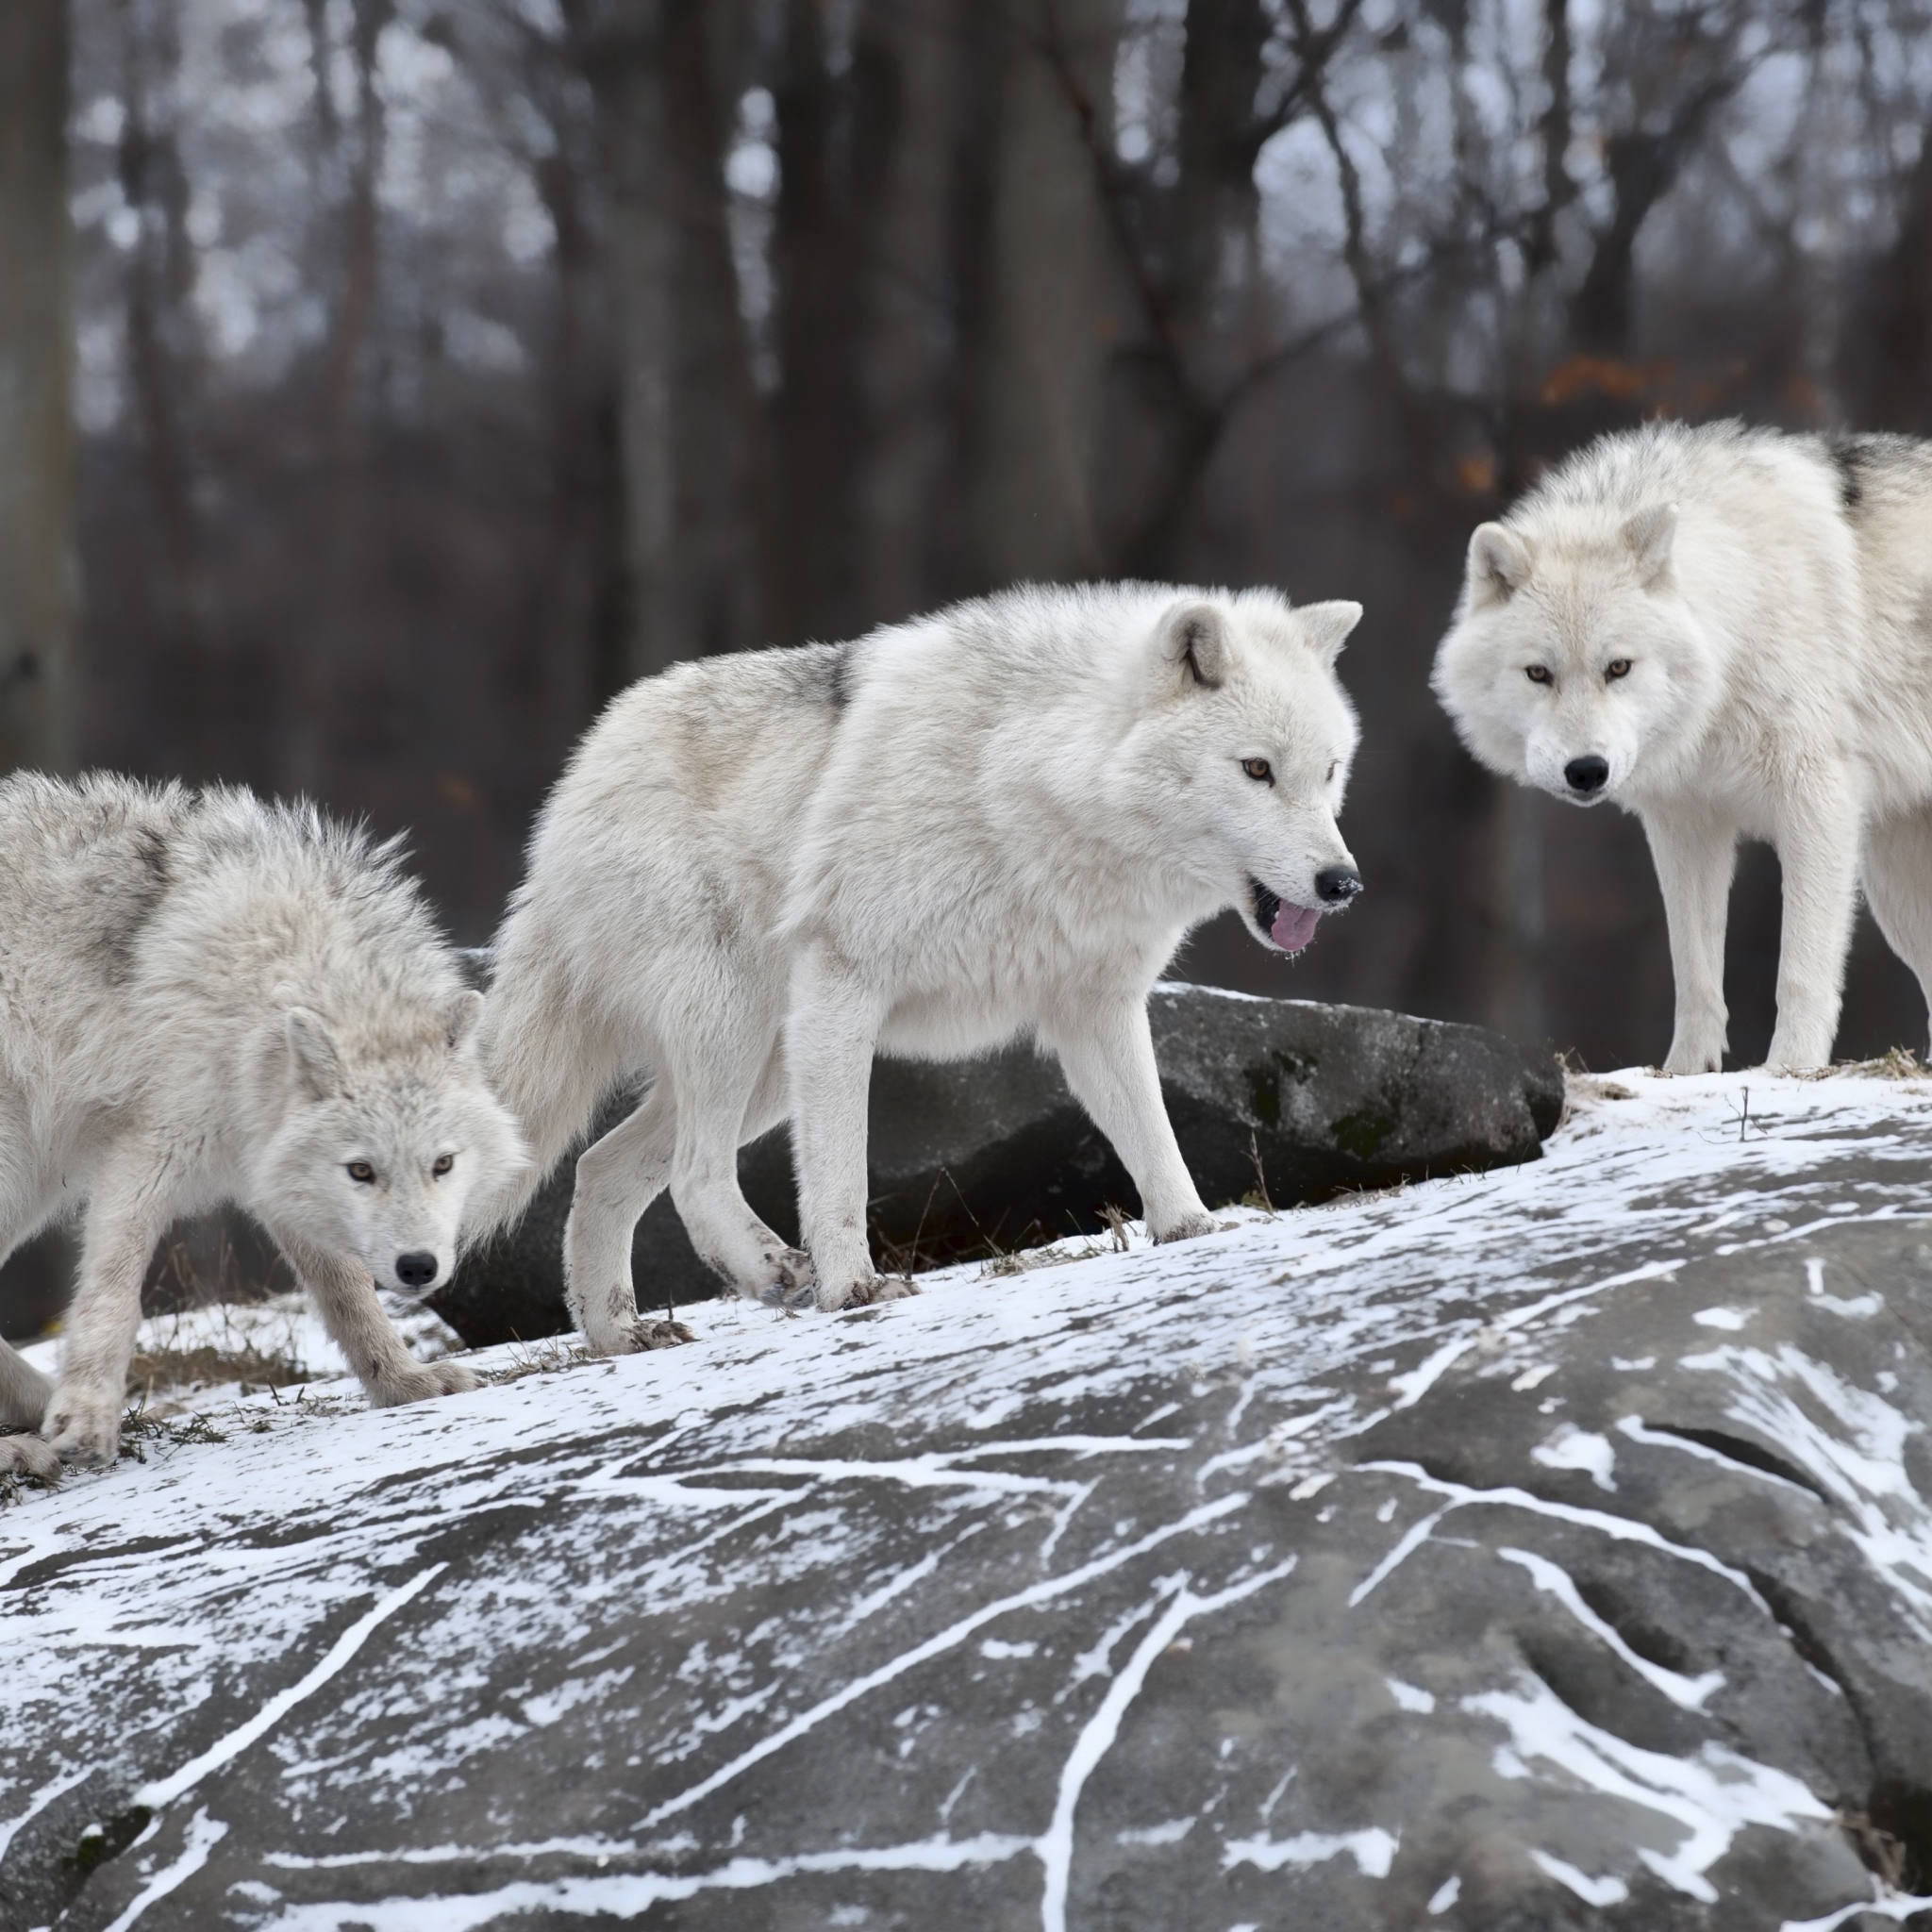 Скачать картинку Животные, Арктический Волк в телефон бесплатно.